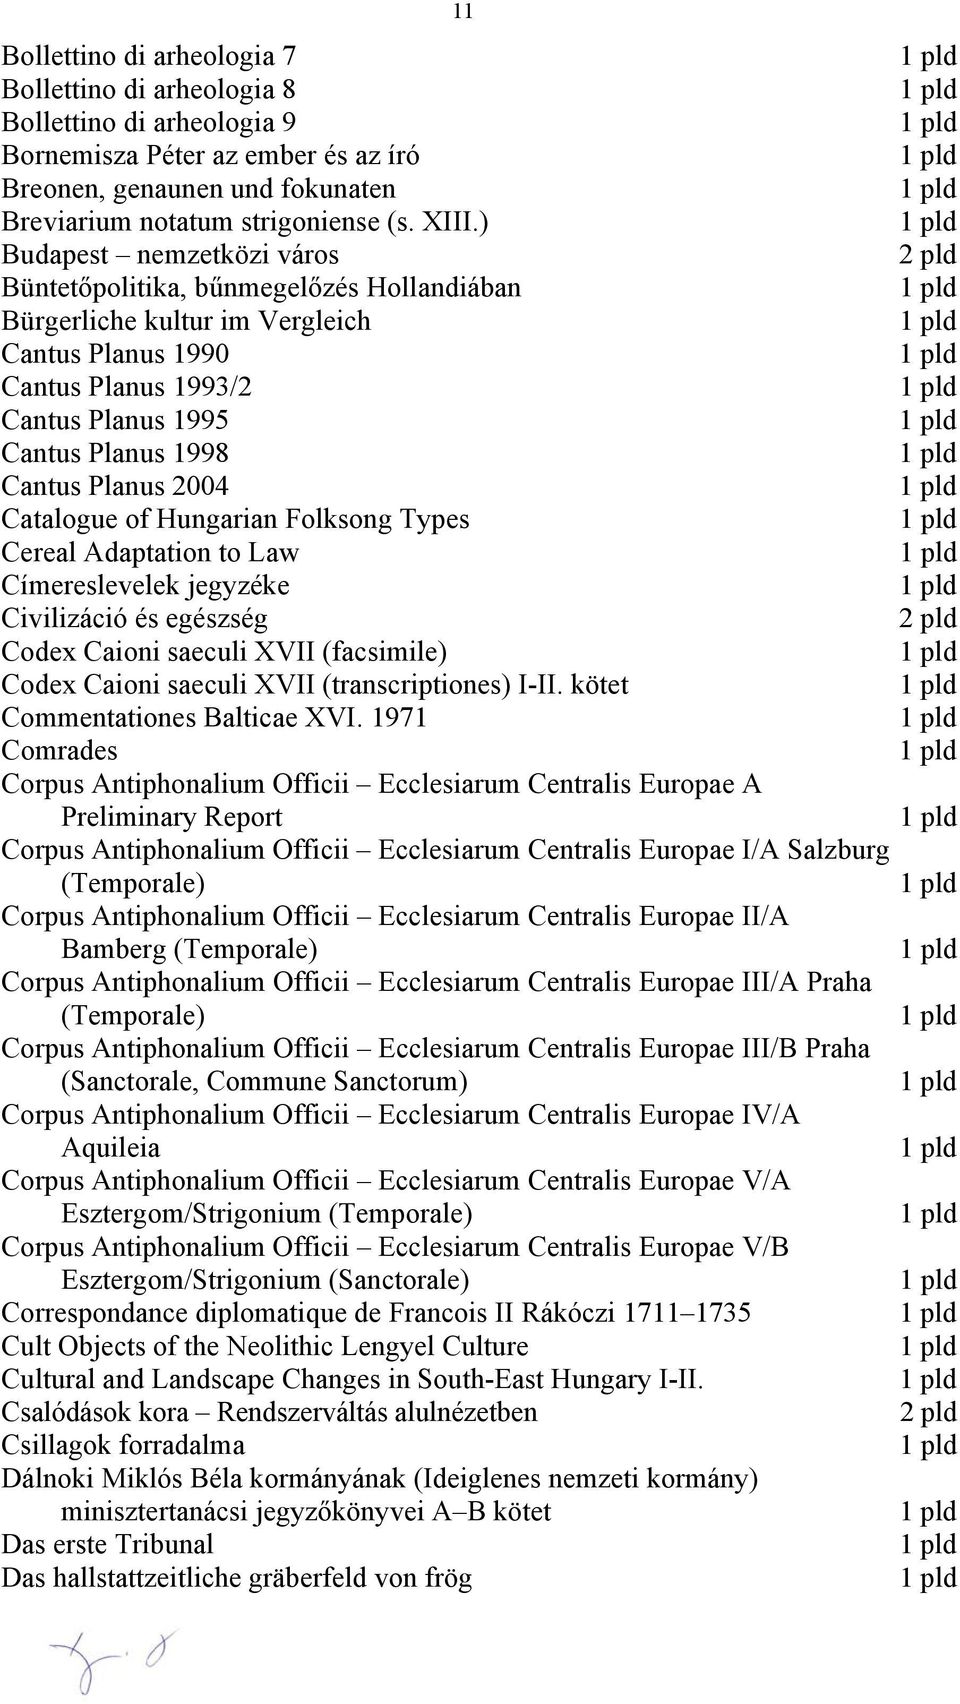 Catalogue of Hungarian Folksong Types Cereal Adaptation to Law Címereslevelek jegyzéke Civilizáció és egészség Codex Caioni saeculi XVII (facsimile) Codex Caioni saeculi XVII (transcriptiones) I-II.